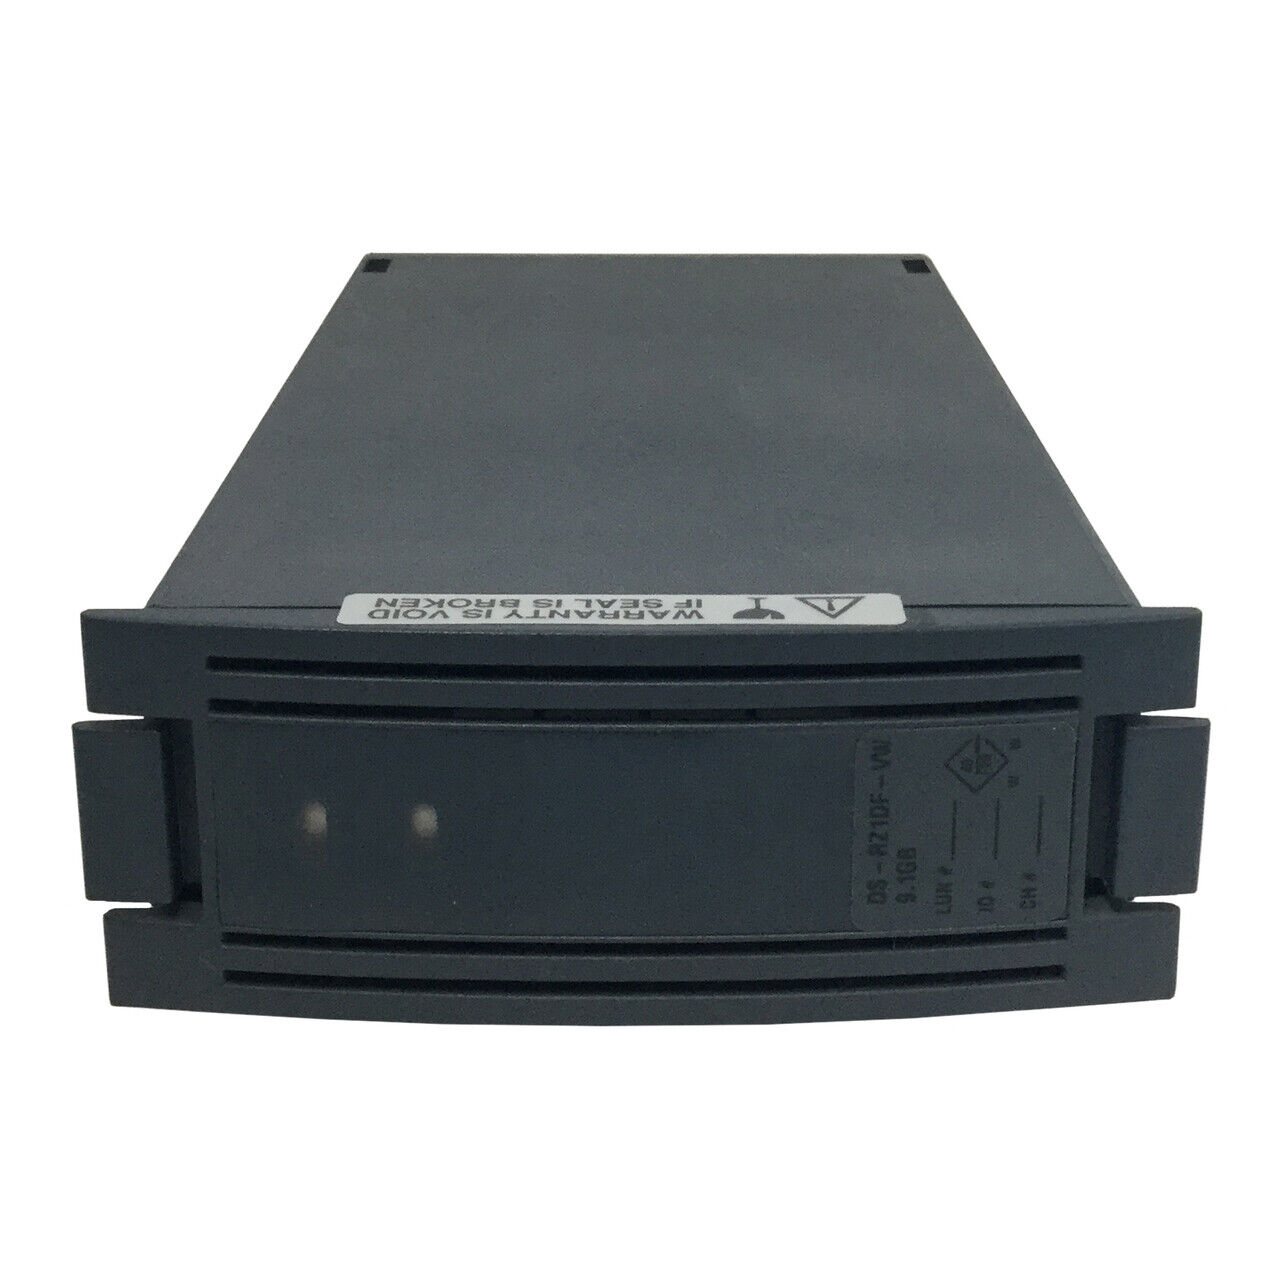 HP DEC DS-RZ1DF-VW  9.1GB 7200 SCSI Hard Drive 400289-001